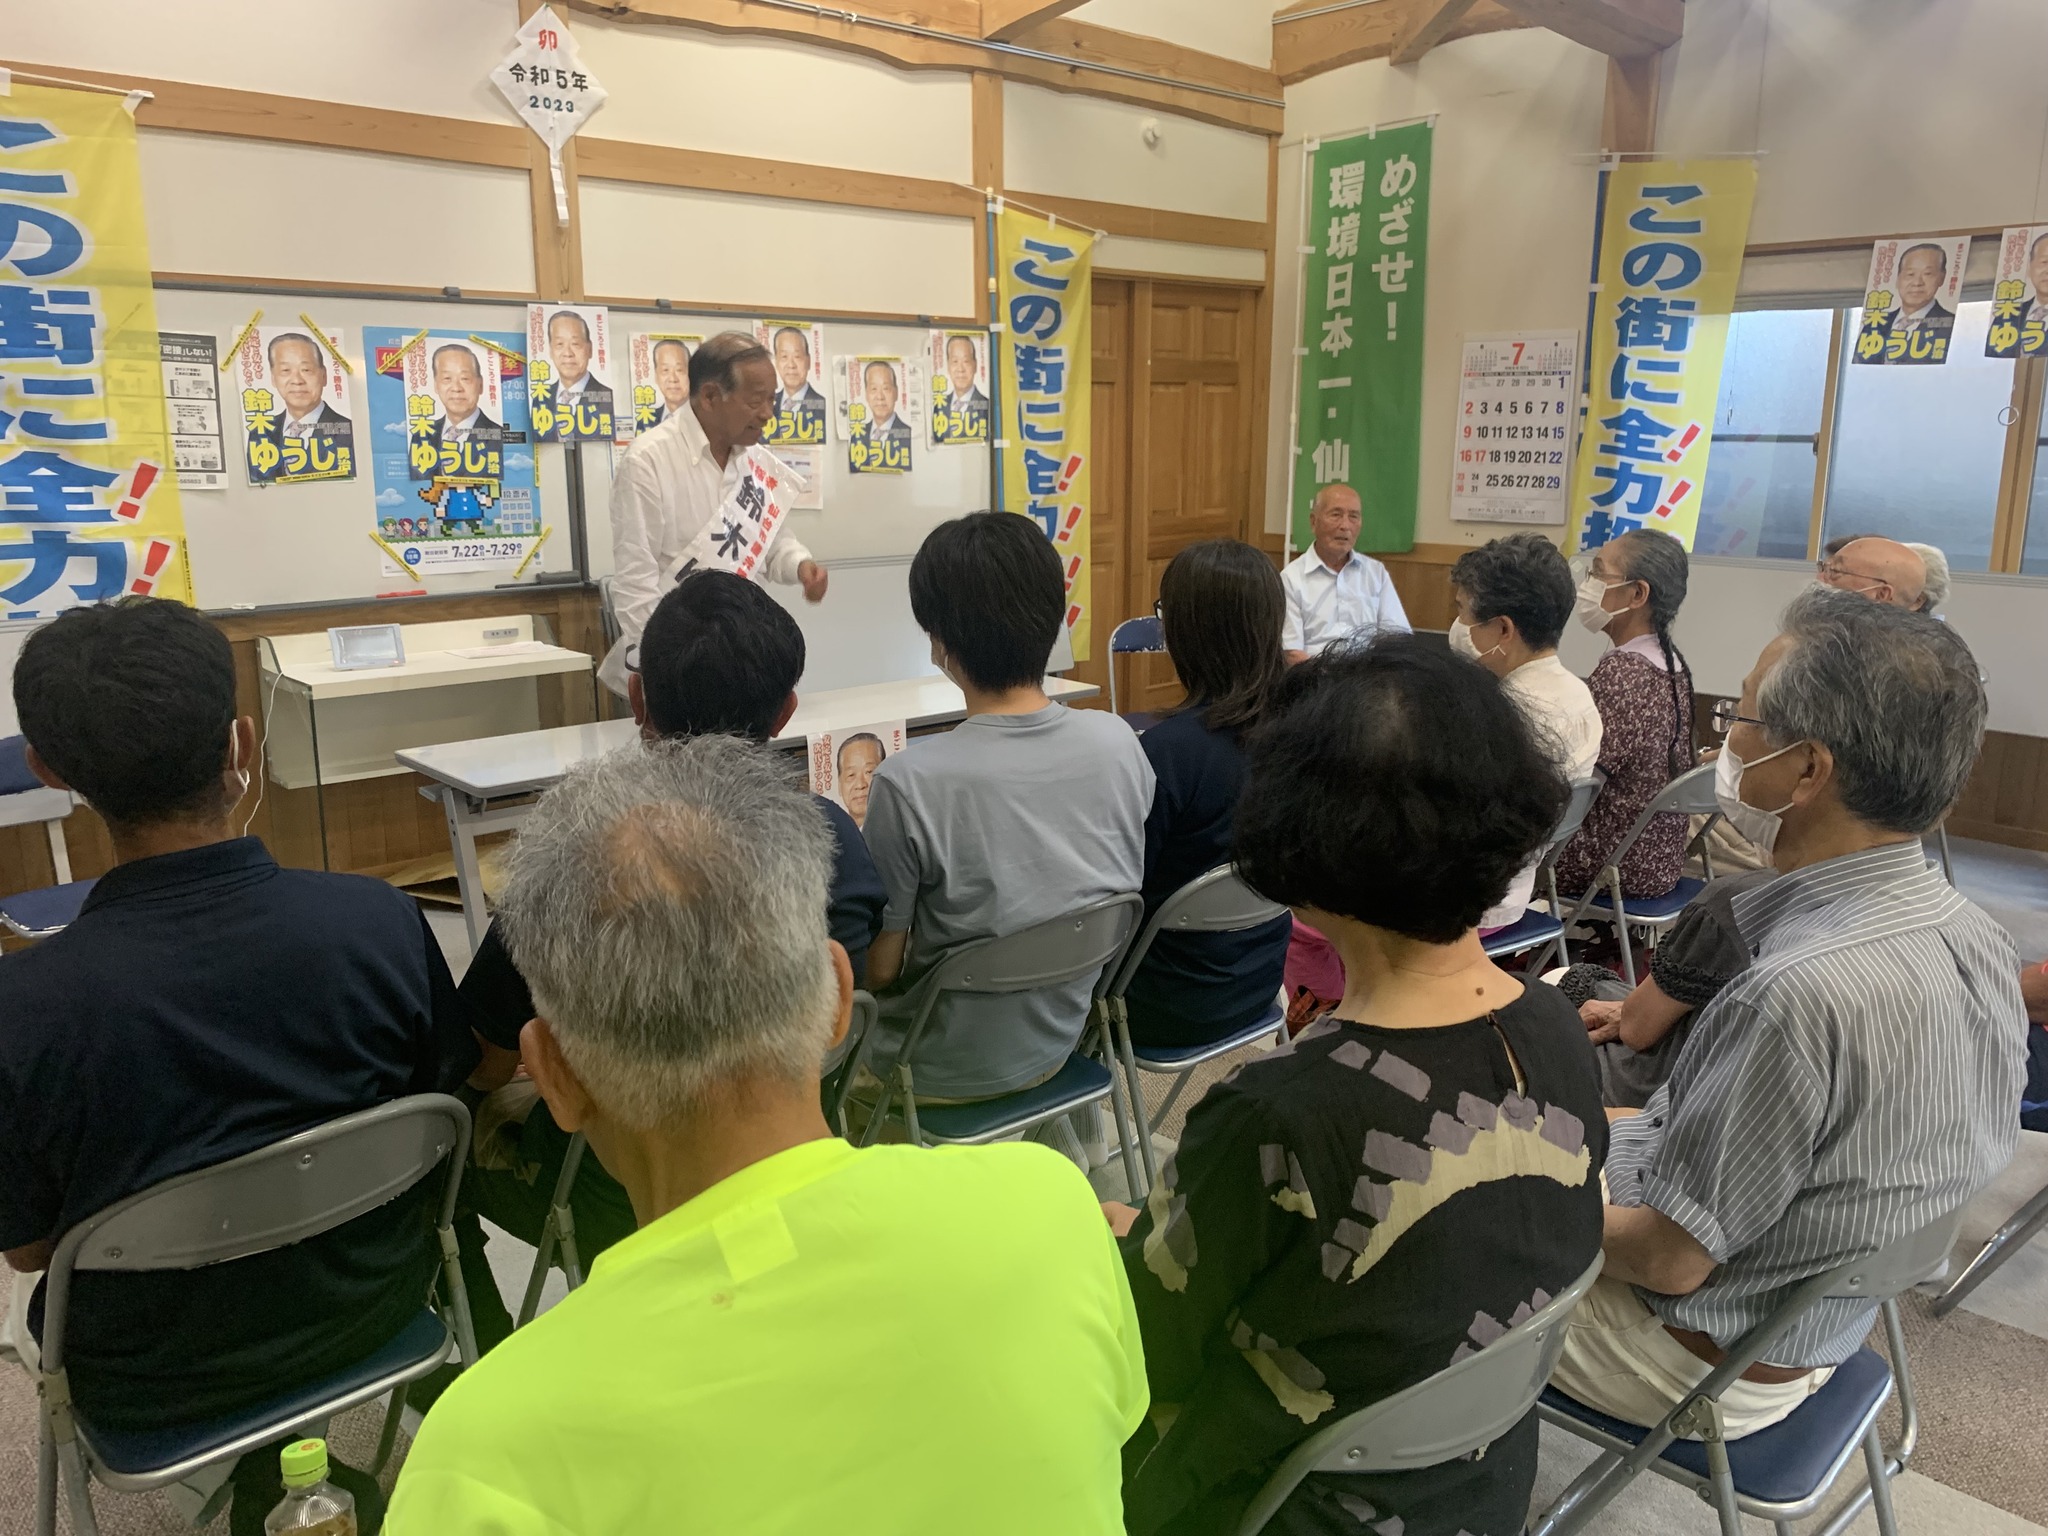 仙台市議会議員選挙８日目、ひより台地区、生出地区にて個人演説会を開催しました。